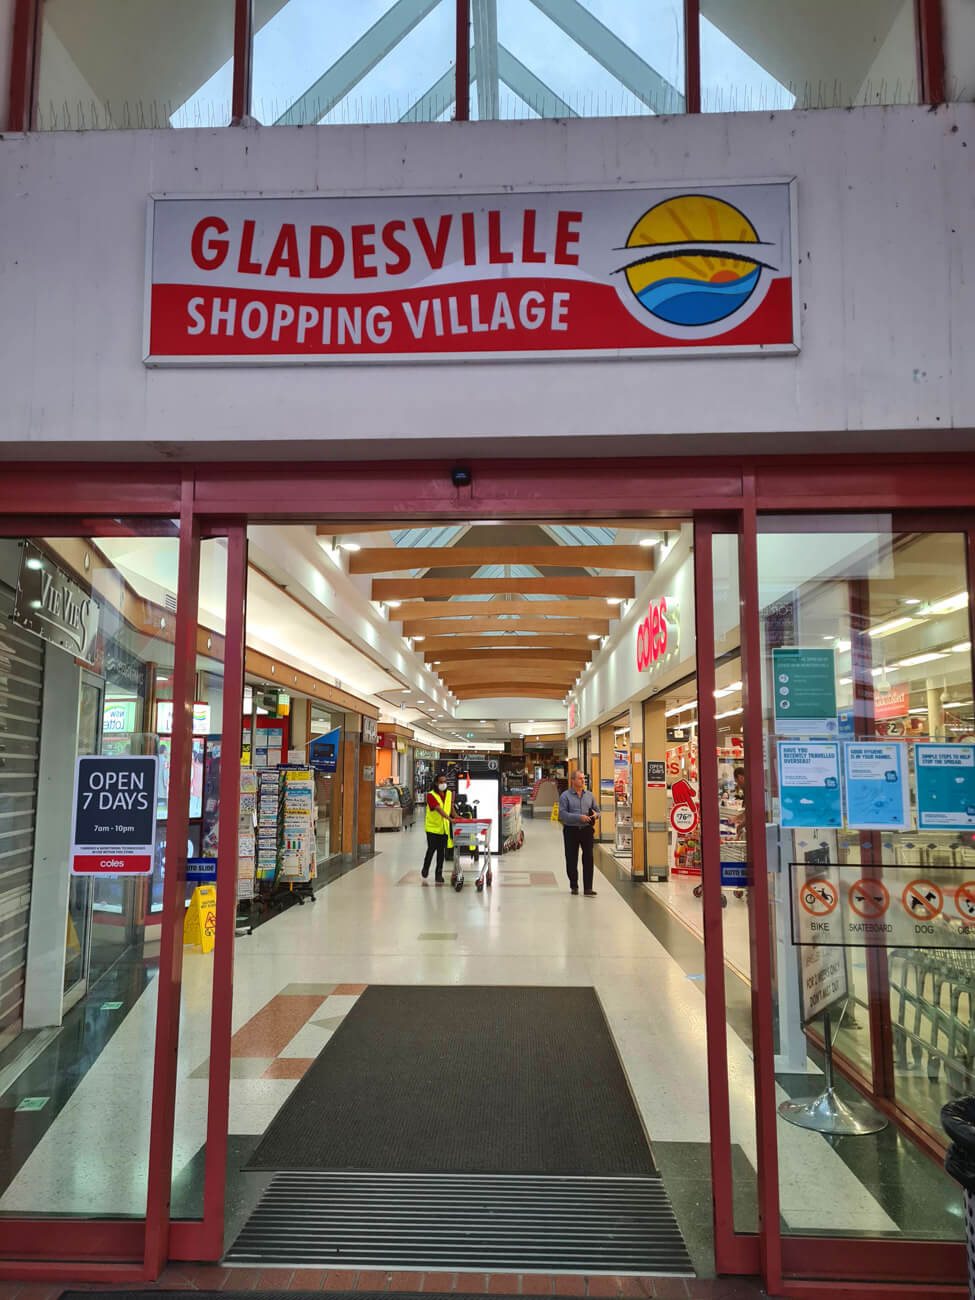 Gladesville shopping village